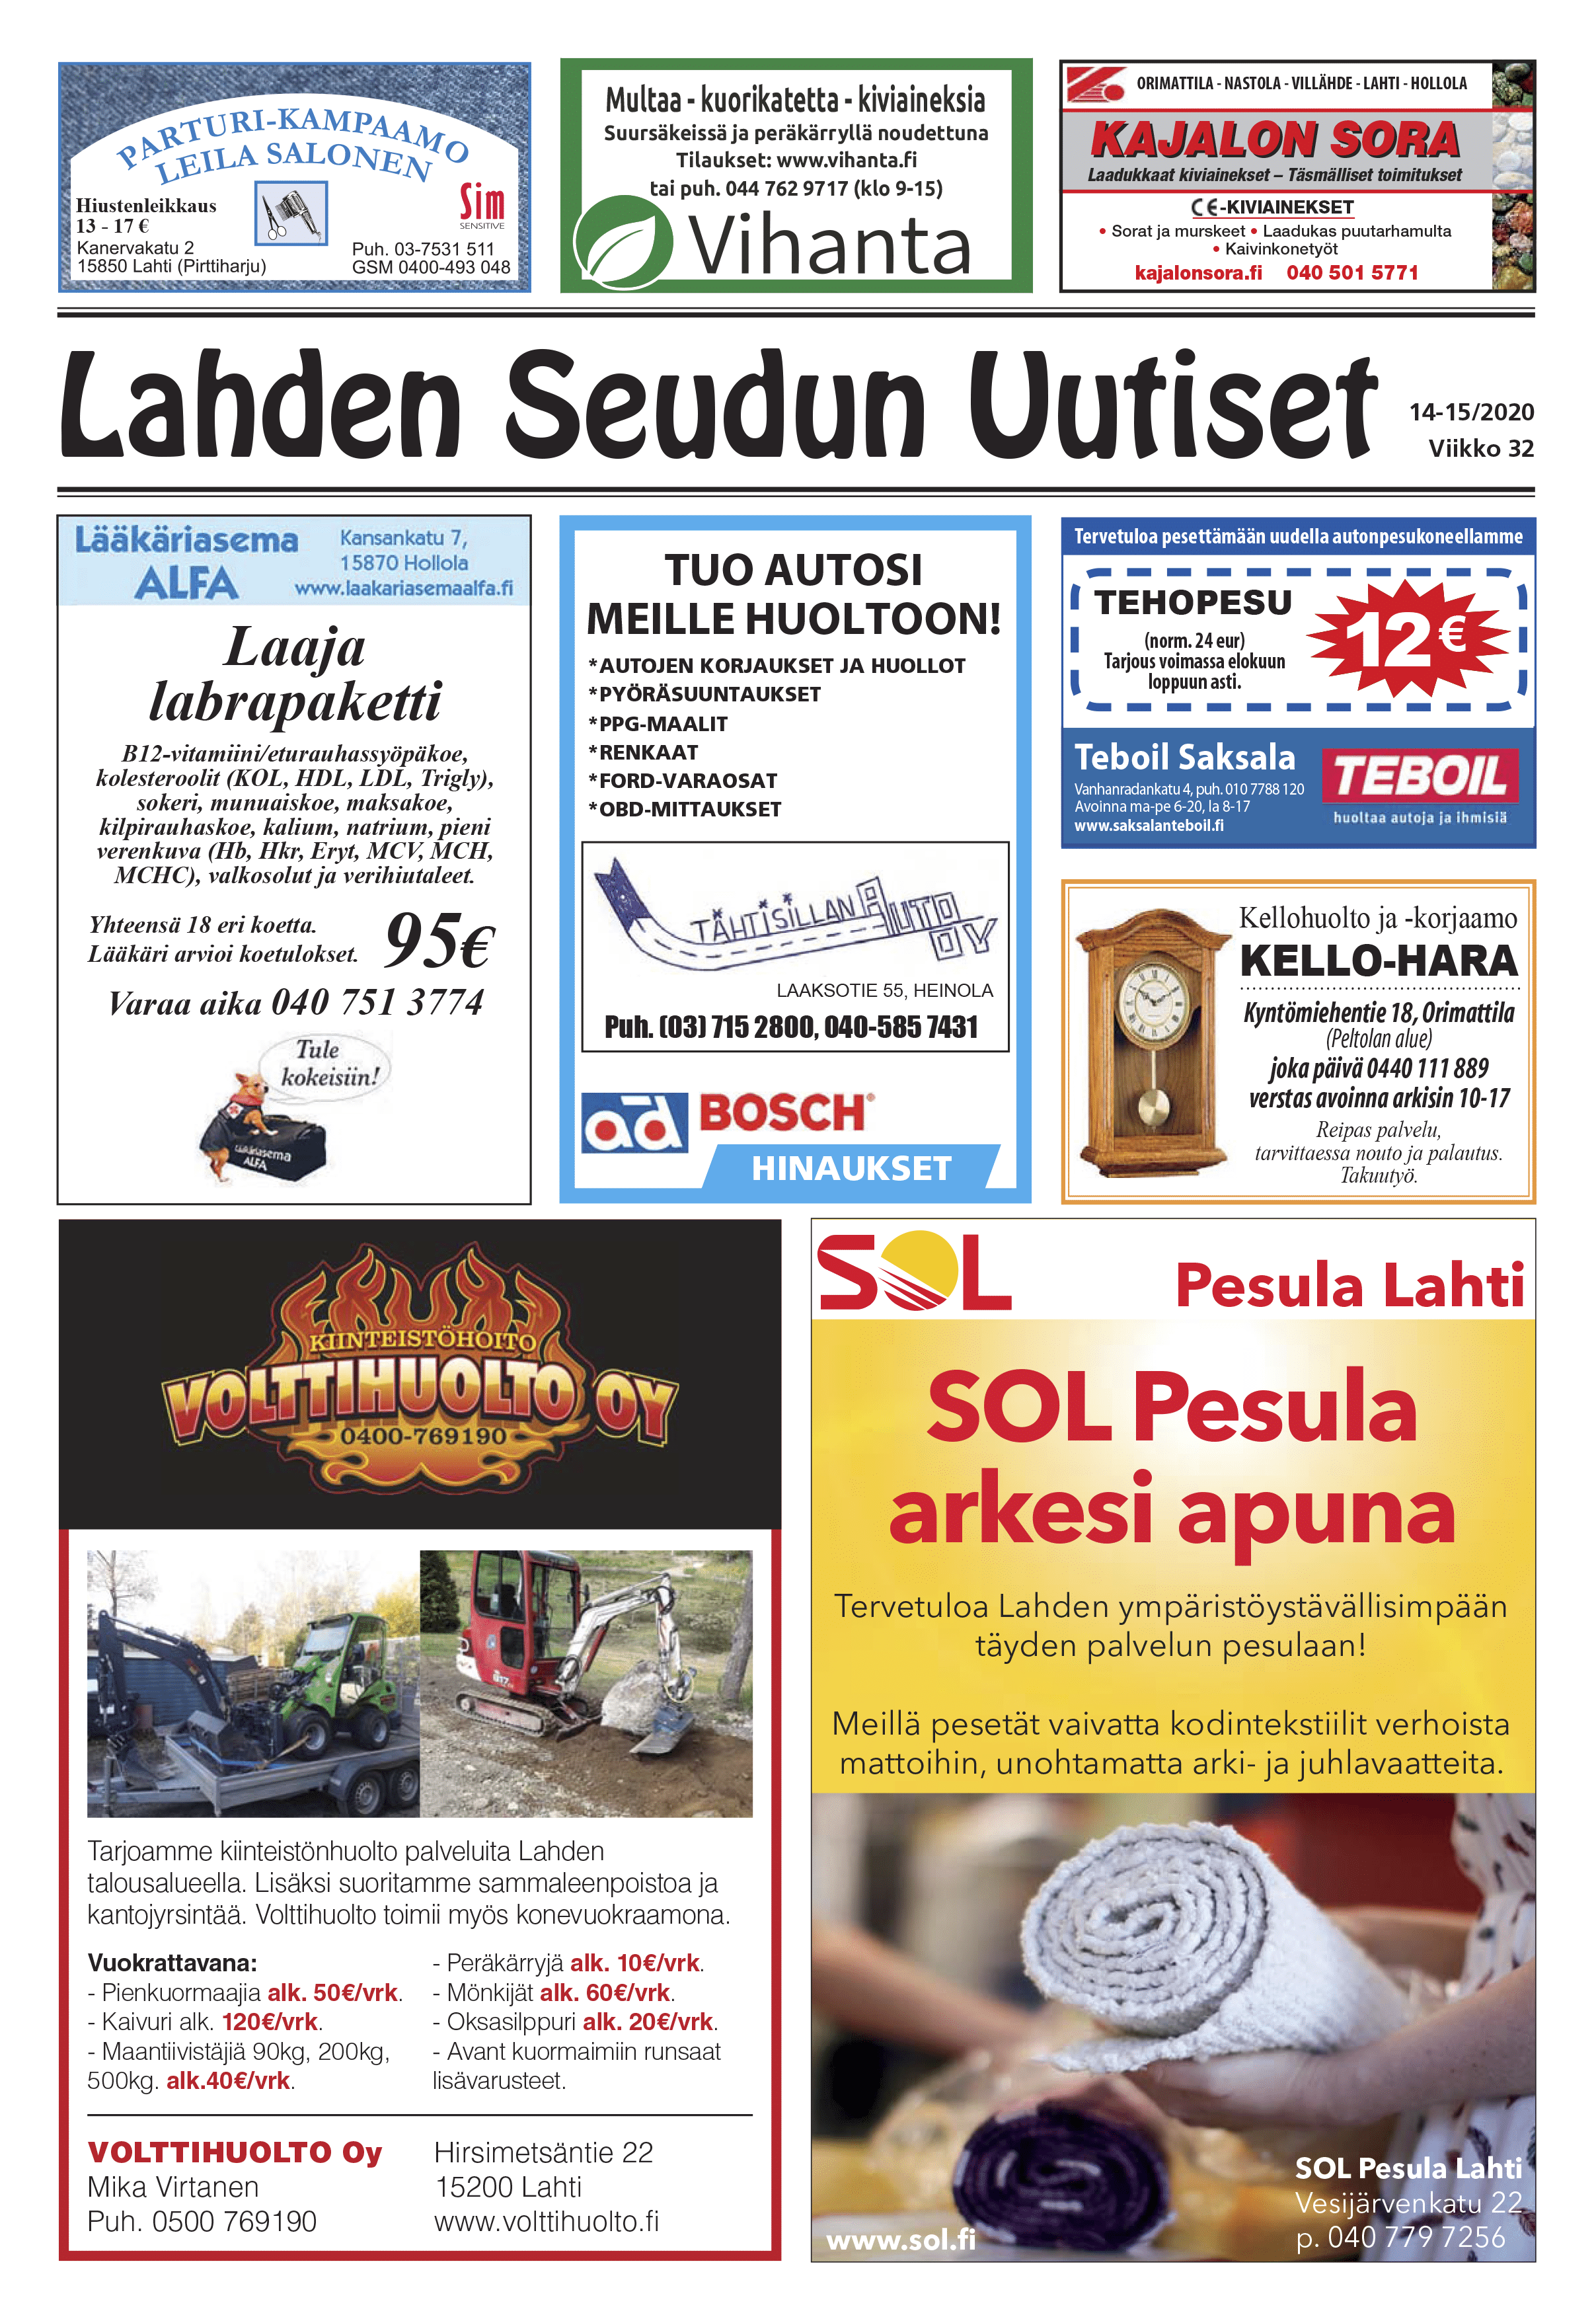 Lahden Seudun Uutiset 14-15/2020